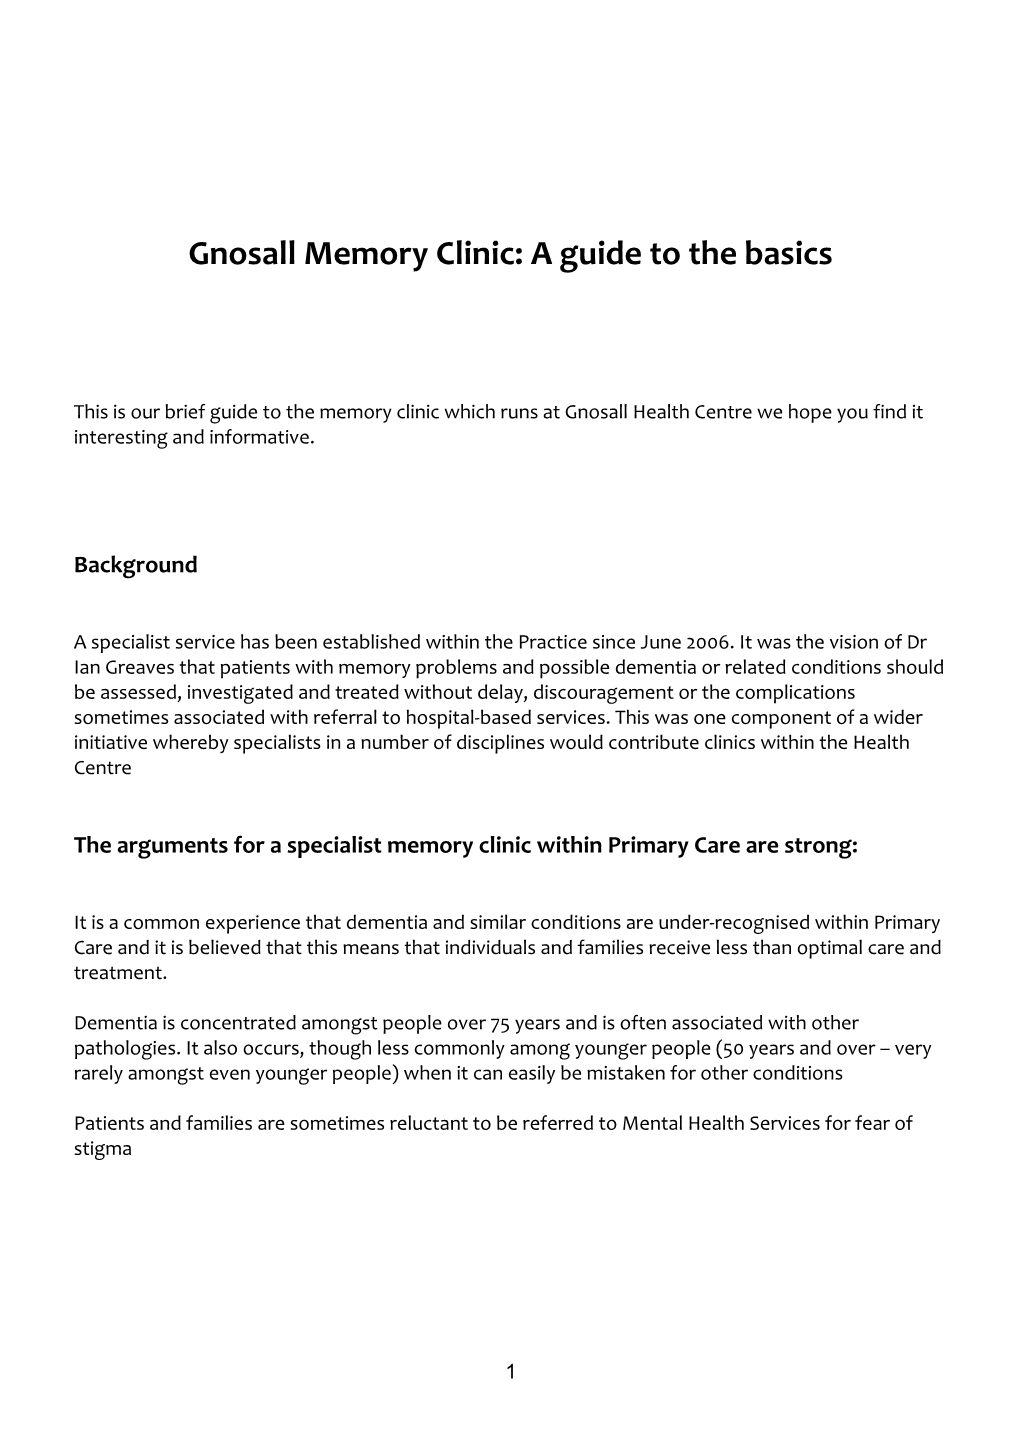 Gnosall Memory Clinic: the Basics